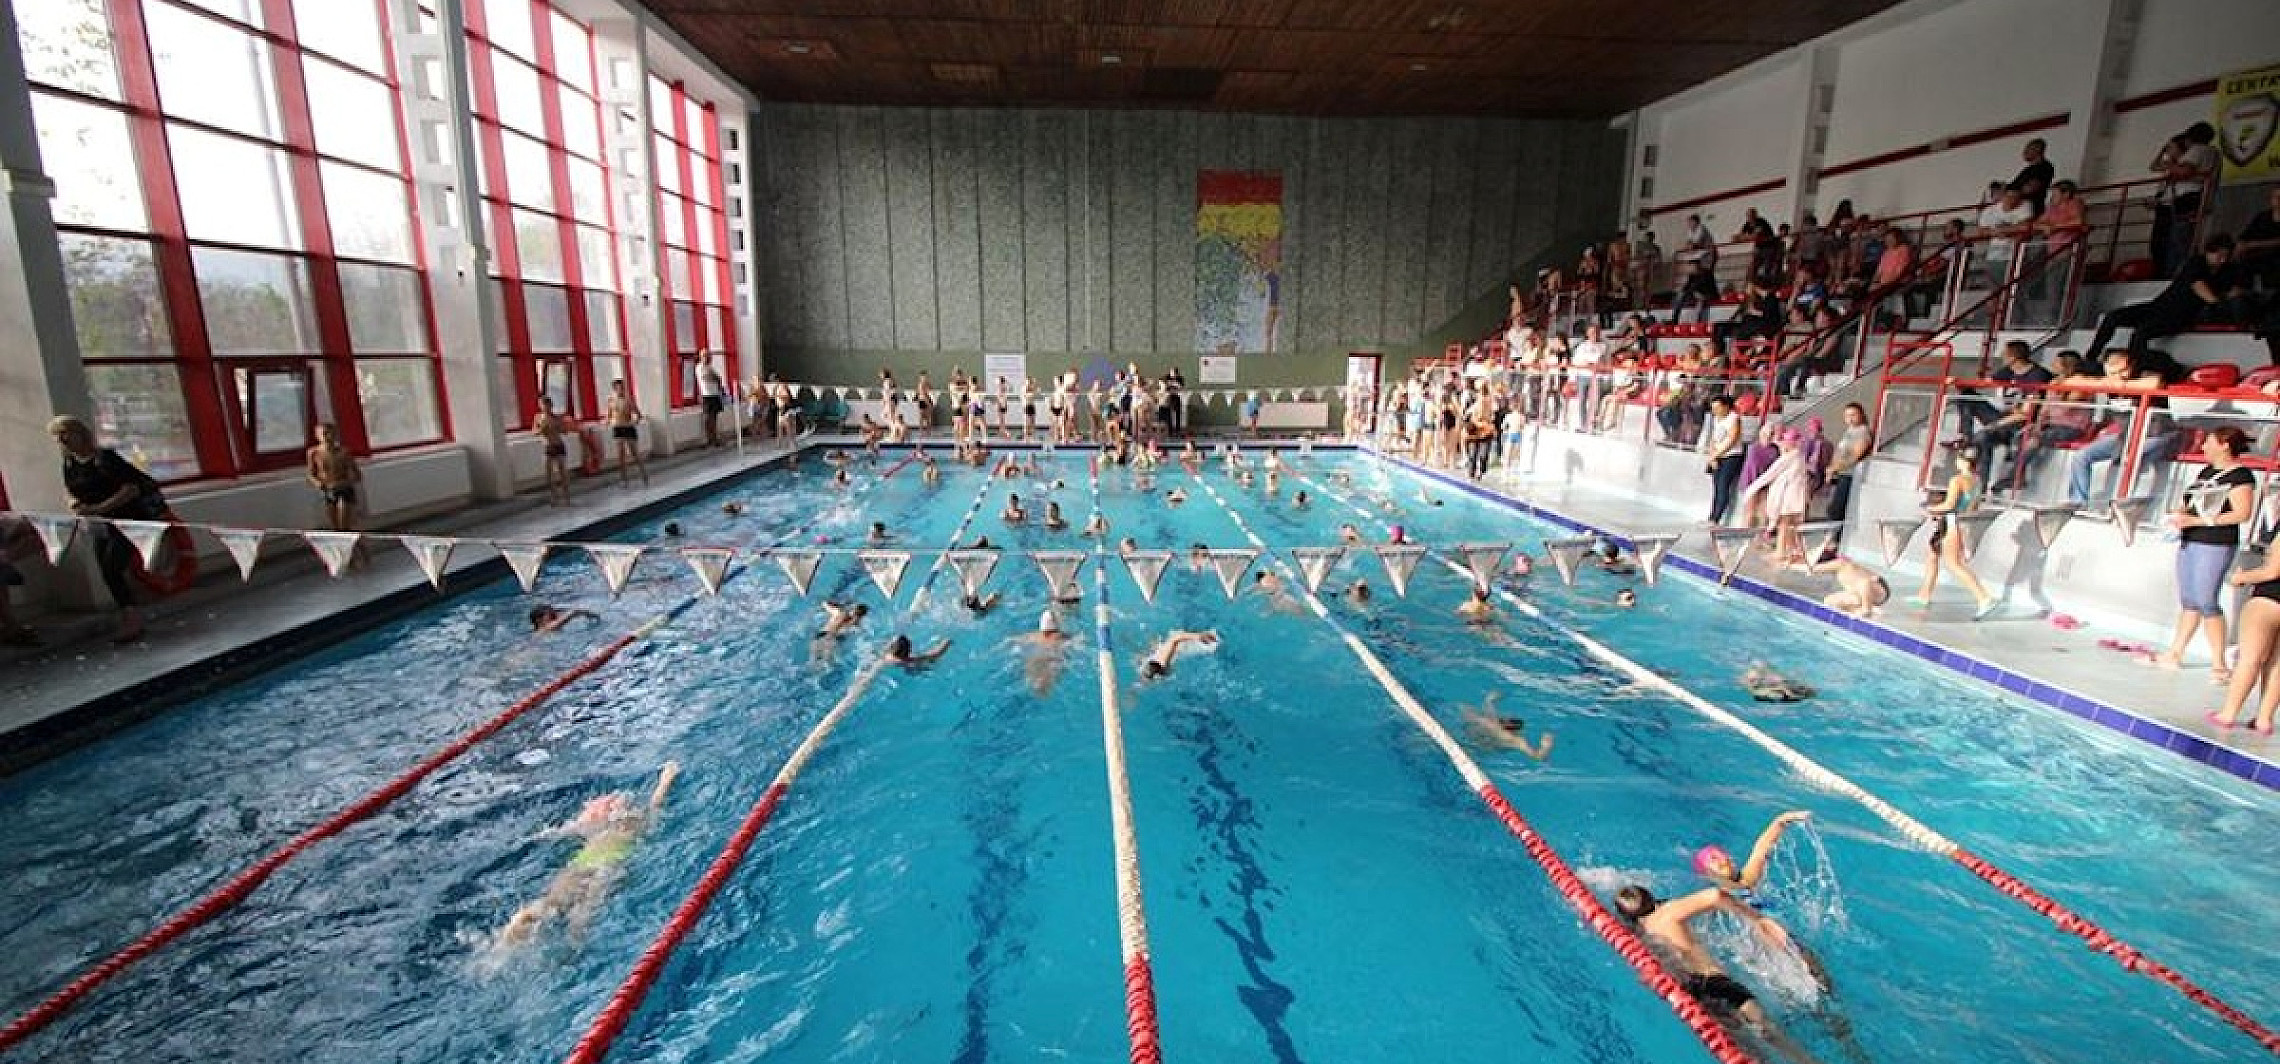 Inowrocław - Rekordowa frekwencja na zawodach pływackich